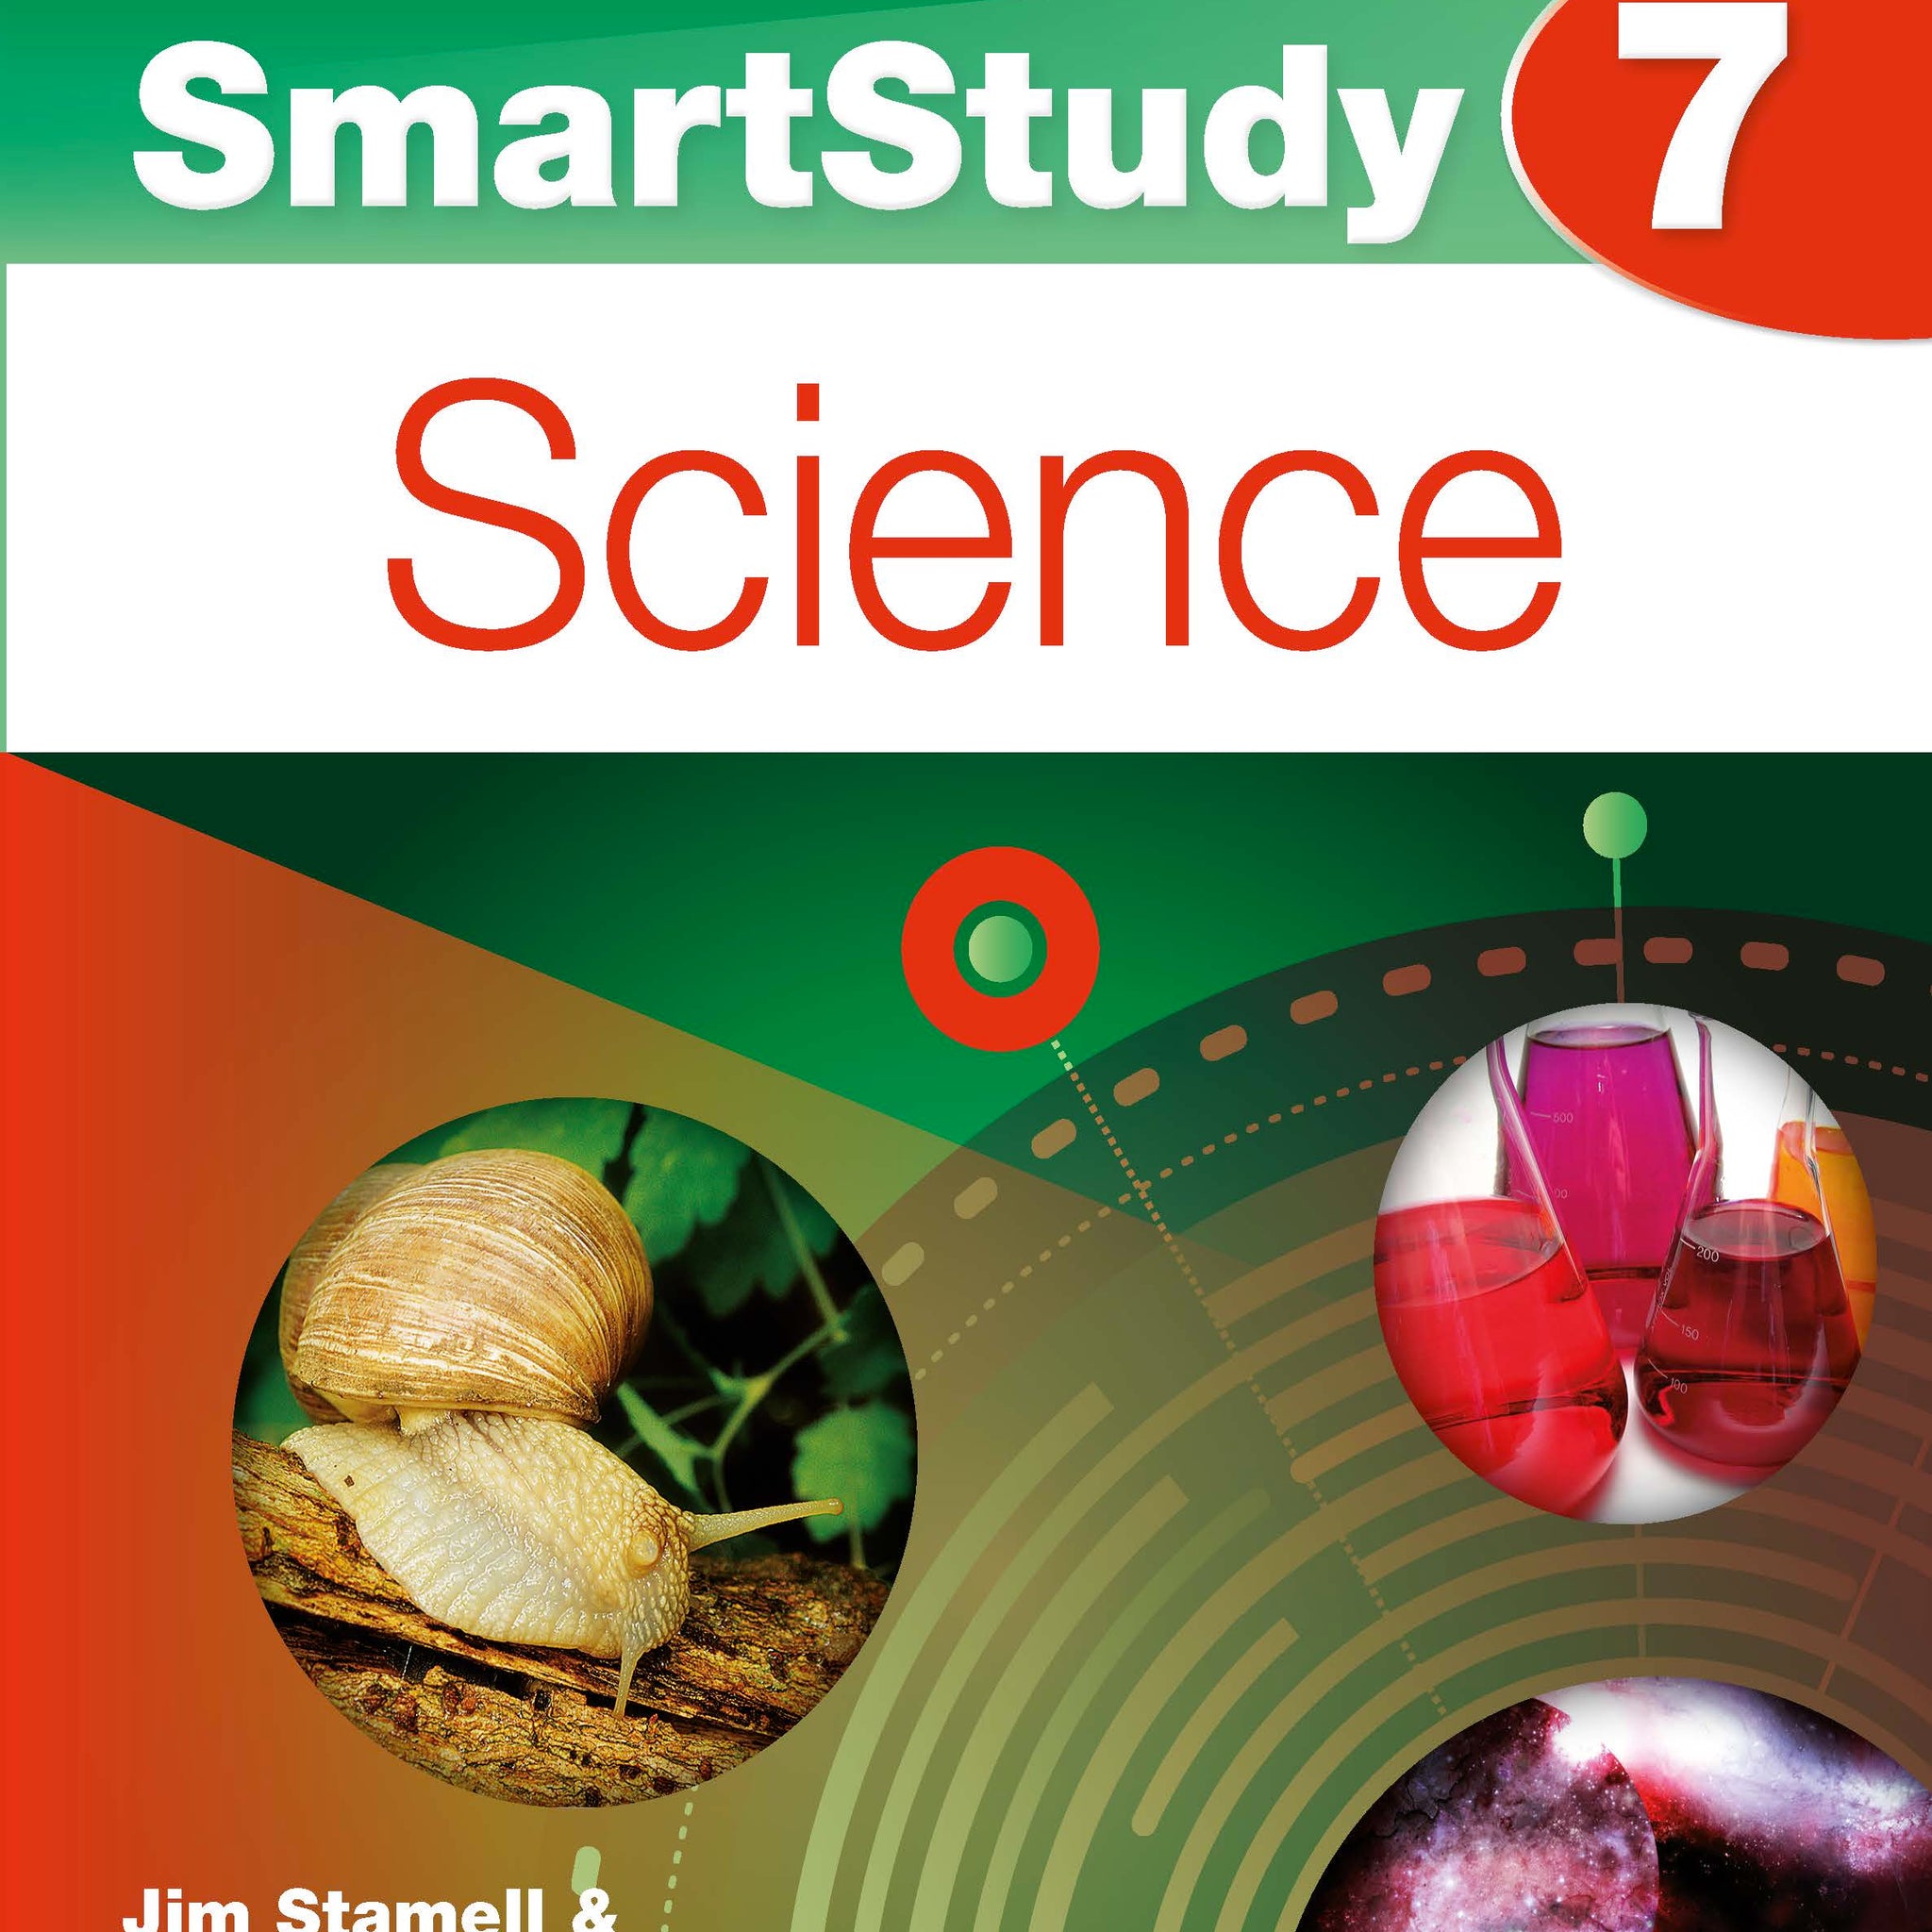 Excel SmartStudy Year 7 Science